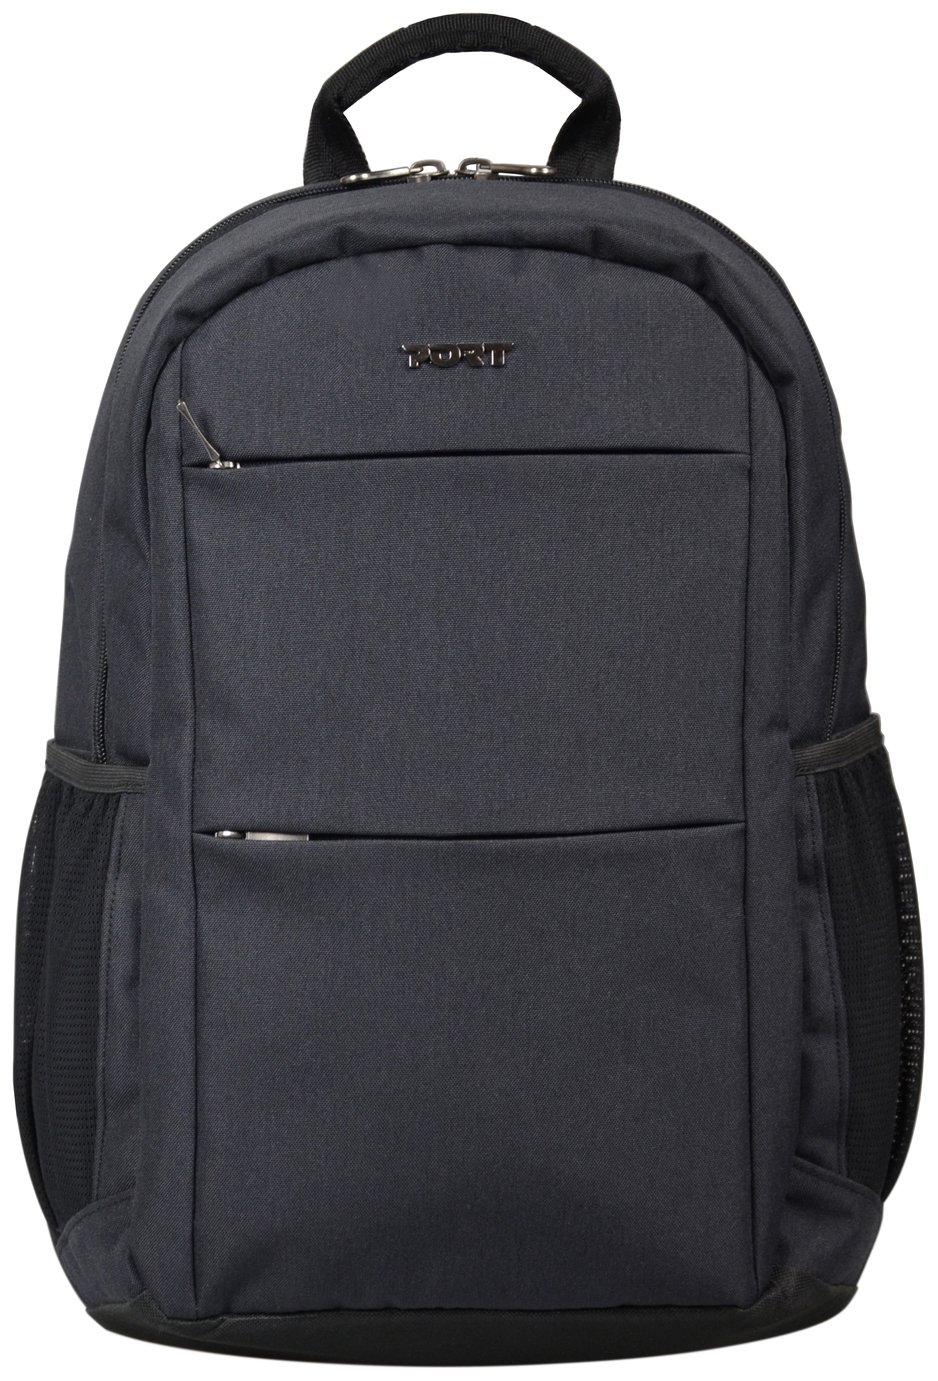 Port Designs Sydney 14 Inch Laptop Backpack - Black